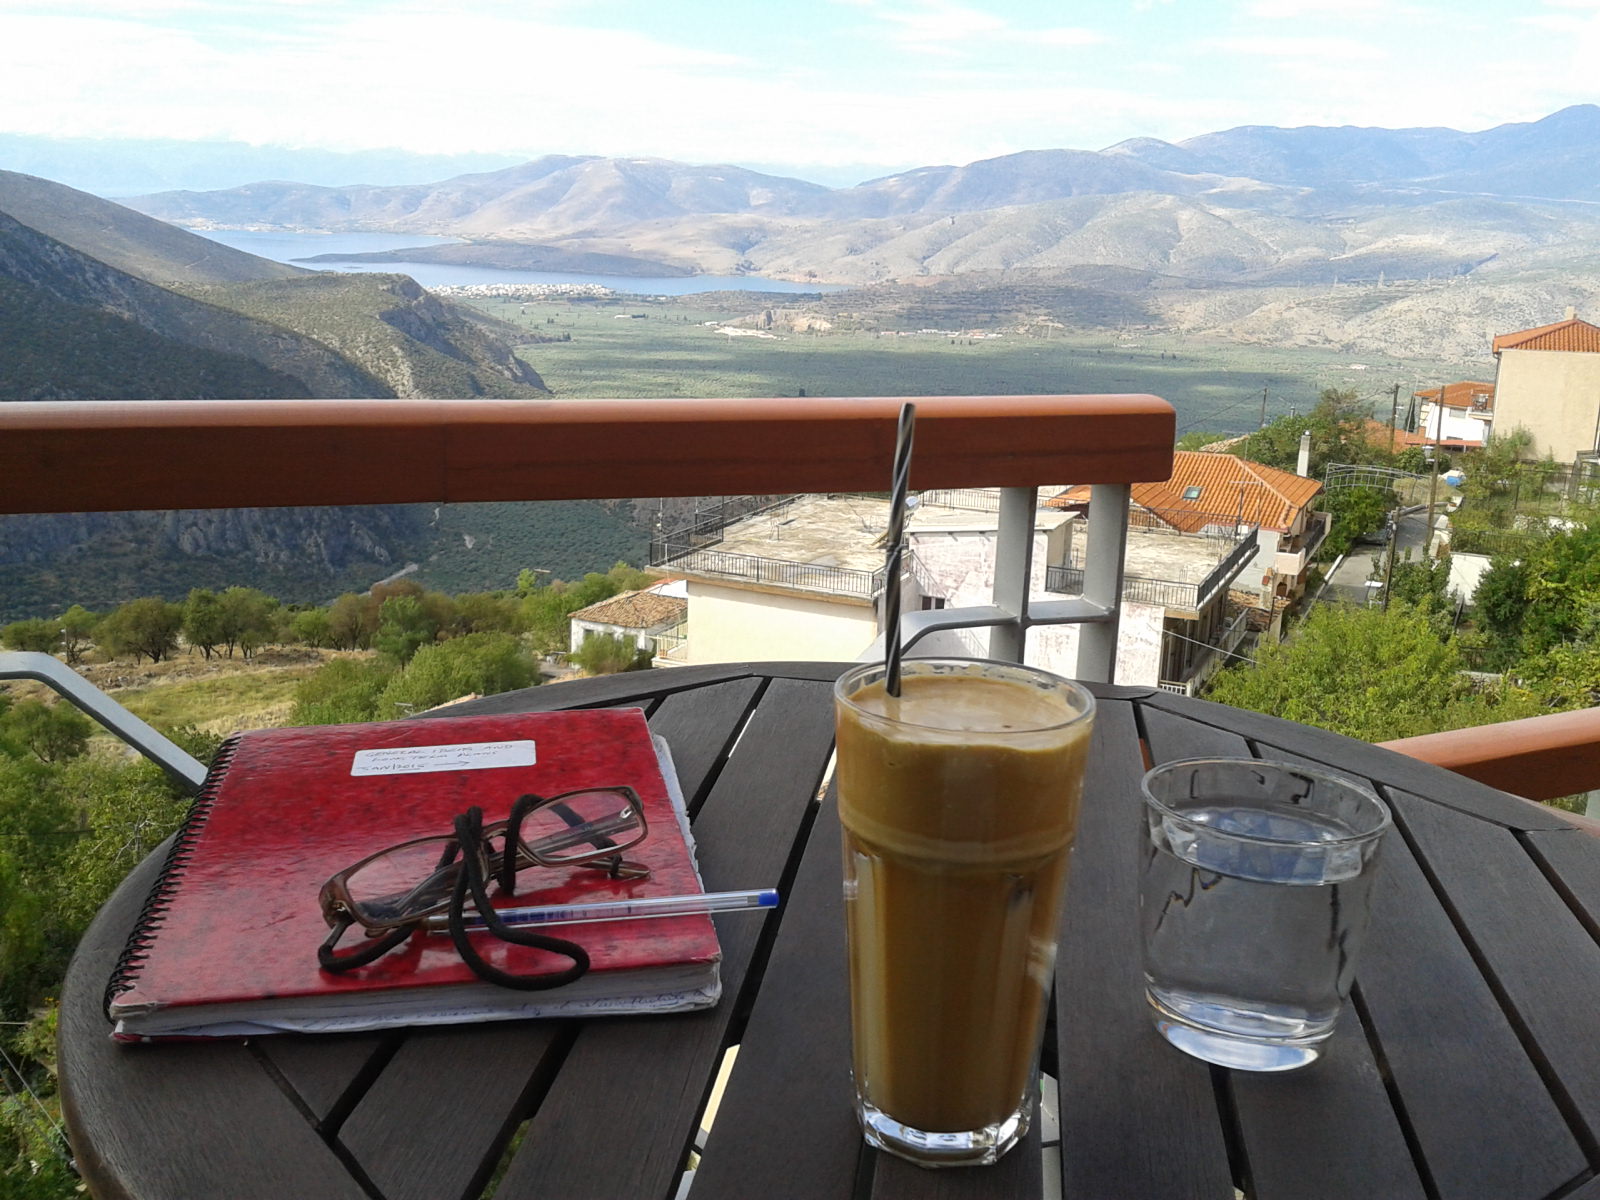 Stylish Coffee Shops in Delphi